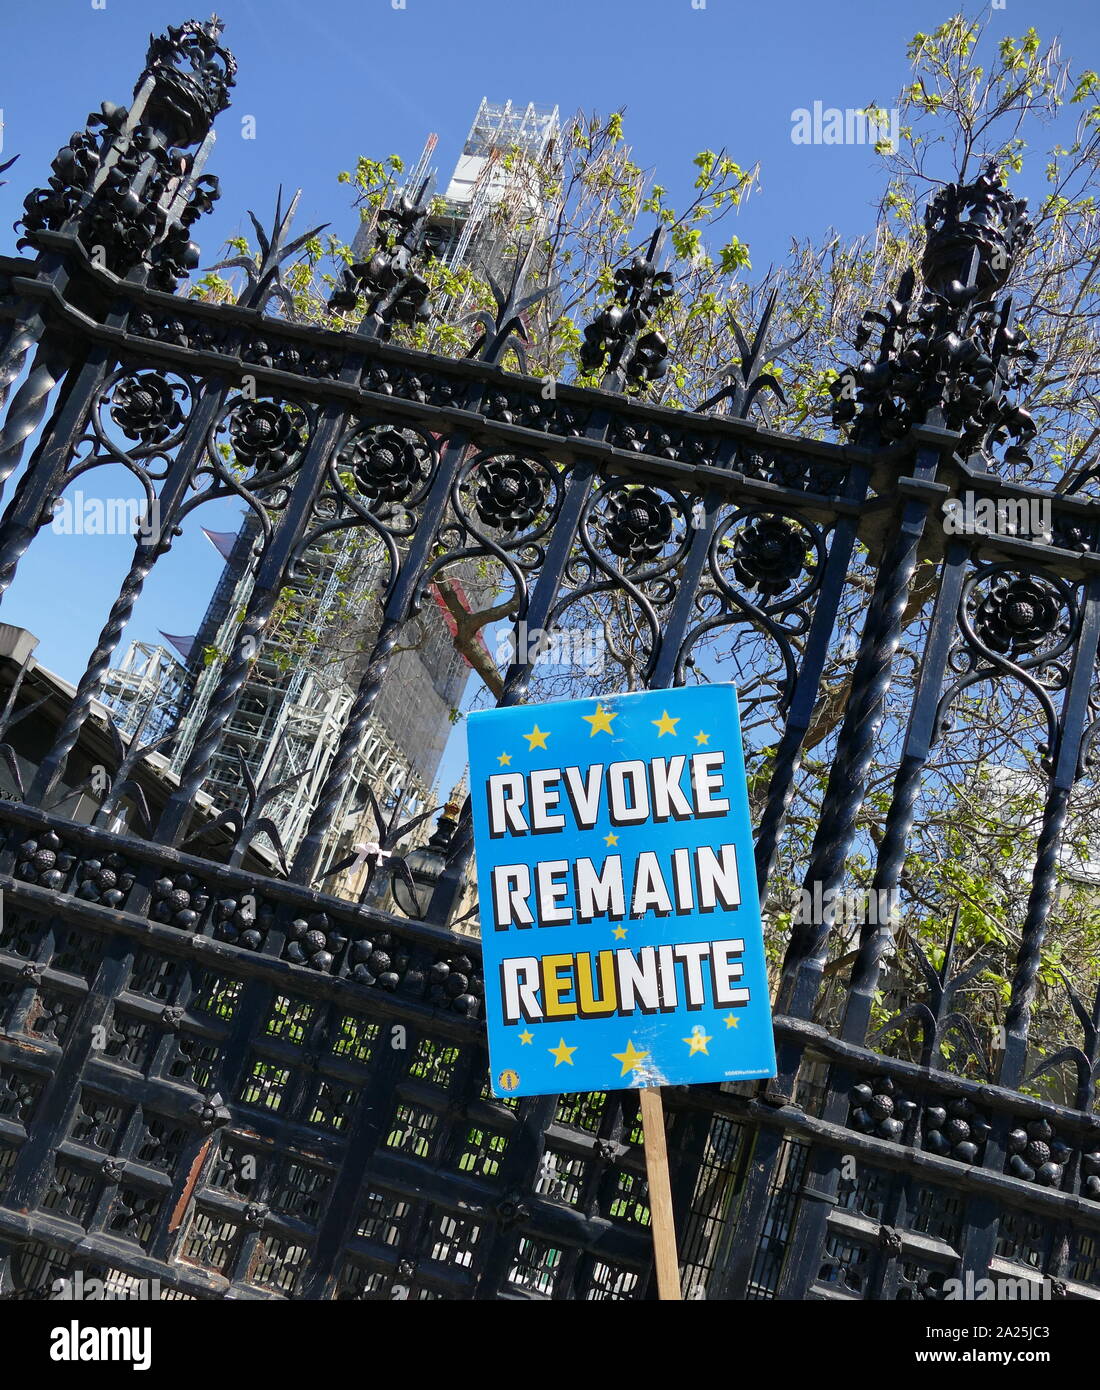 Permanecer' etiqueta fuera del parlamento británico, mayo de 2019. Esta etiqueta representa la campaña para el Reino Unido para permanecer dentro de la Unión Europea Foto de stock